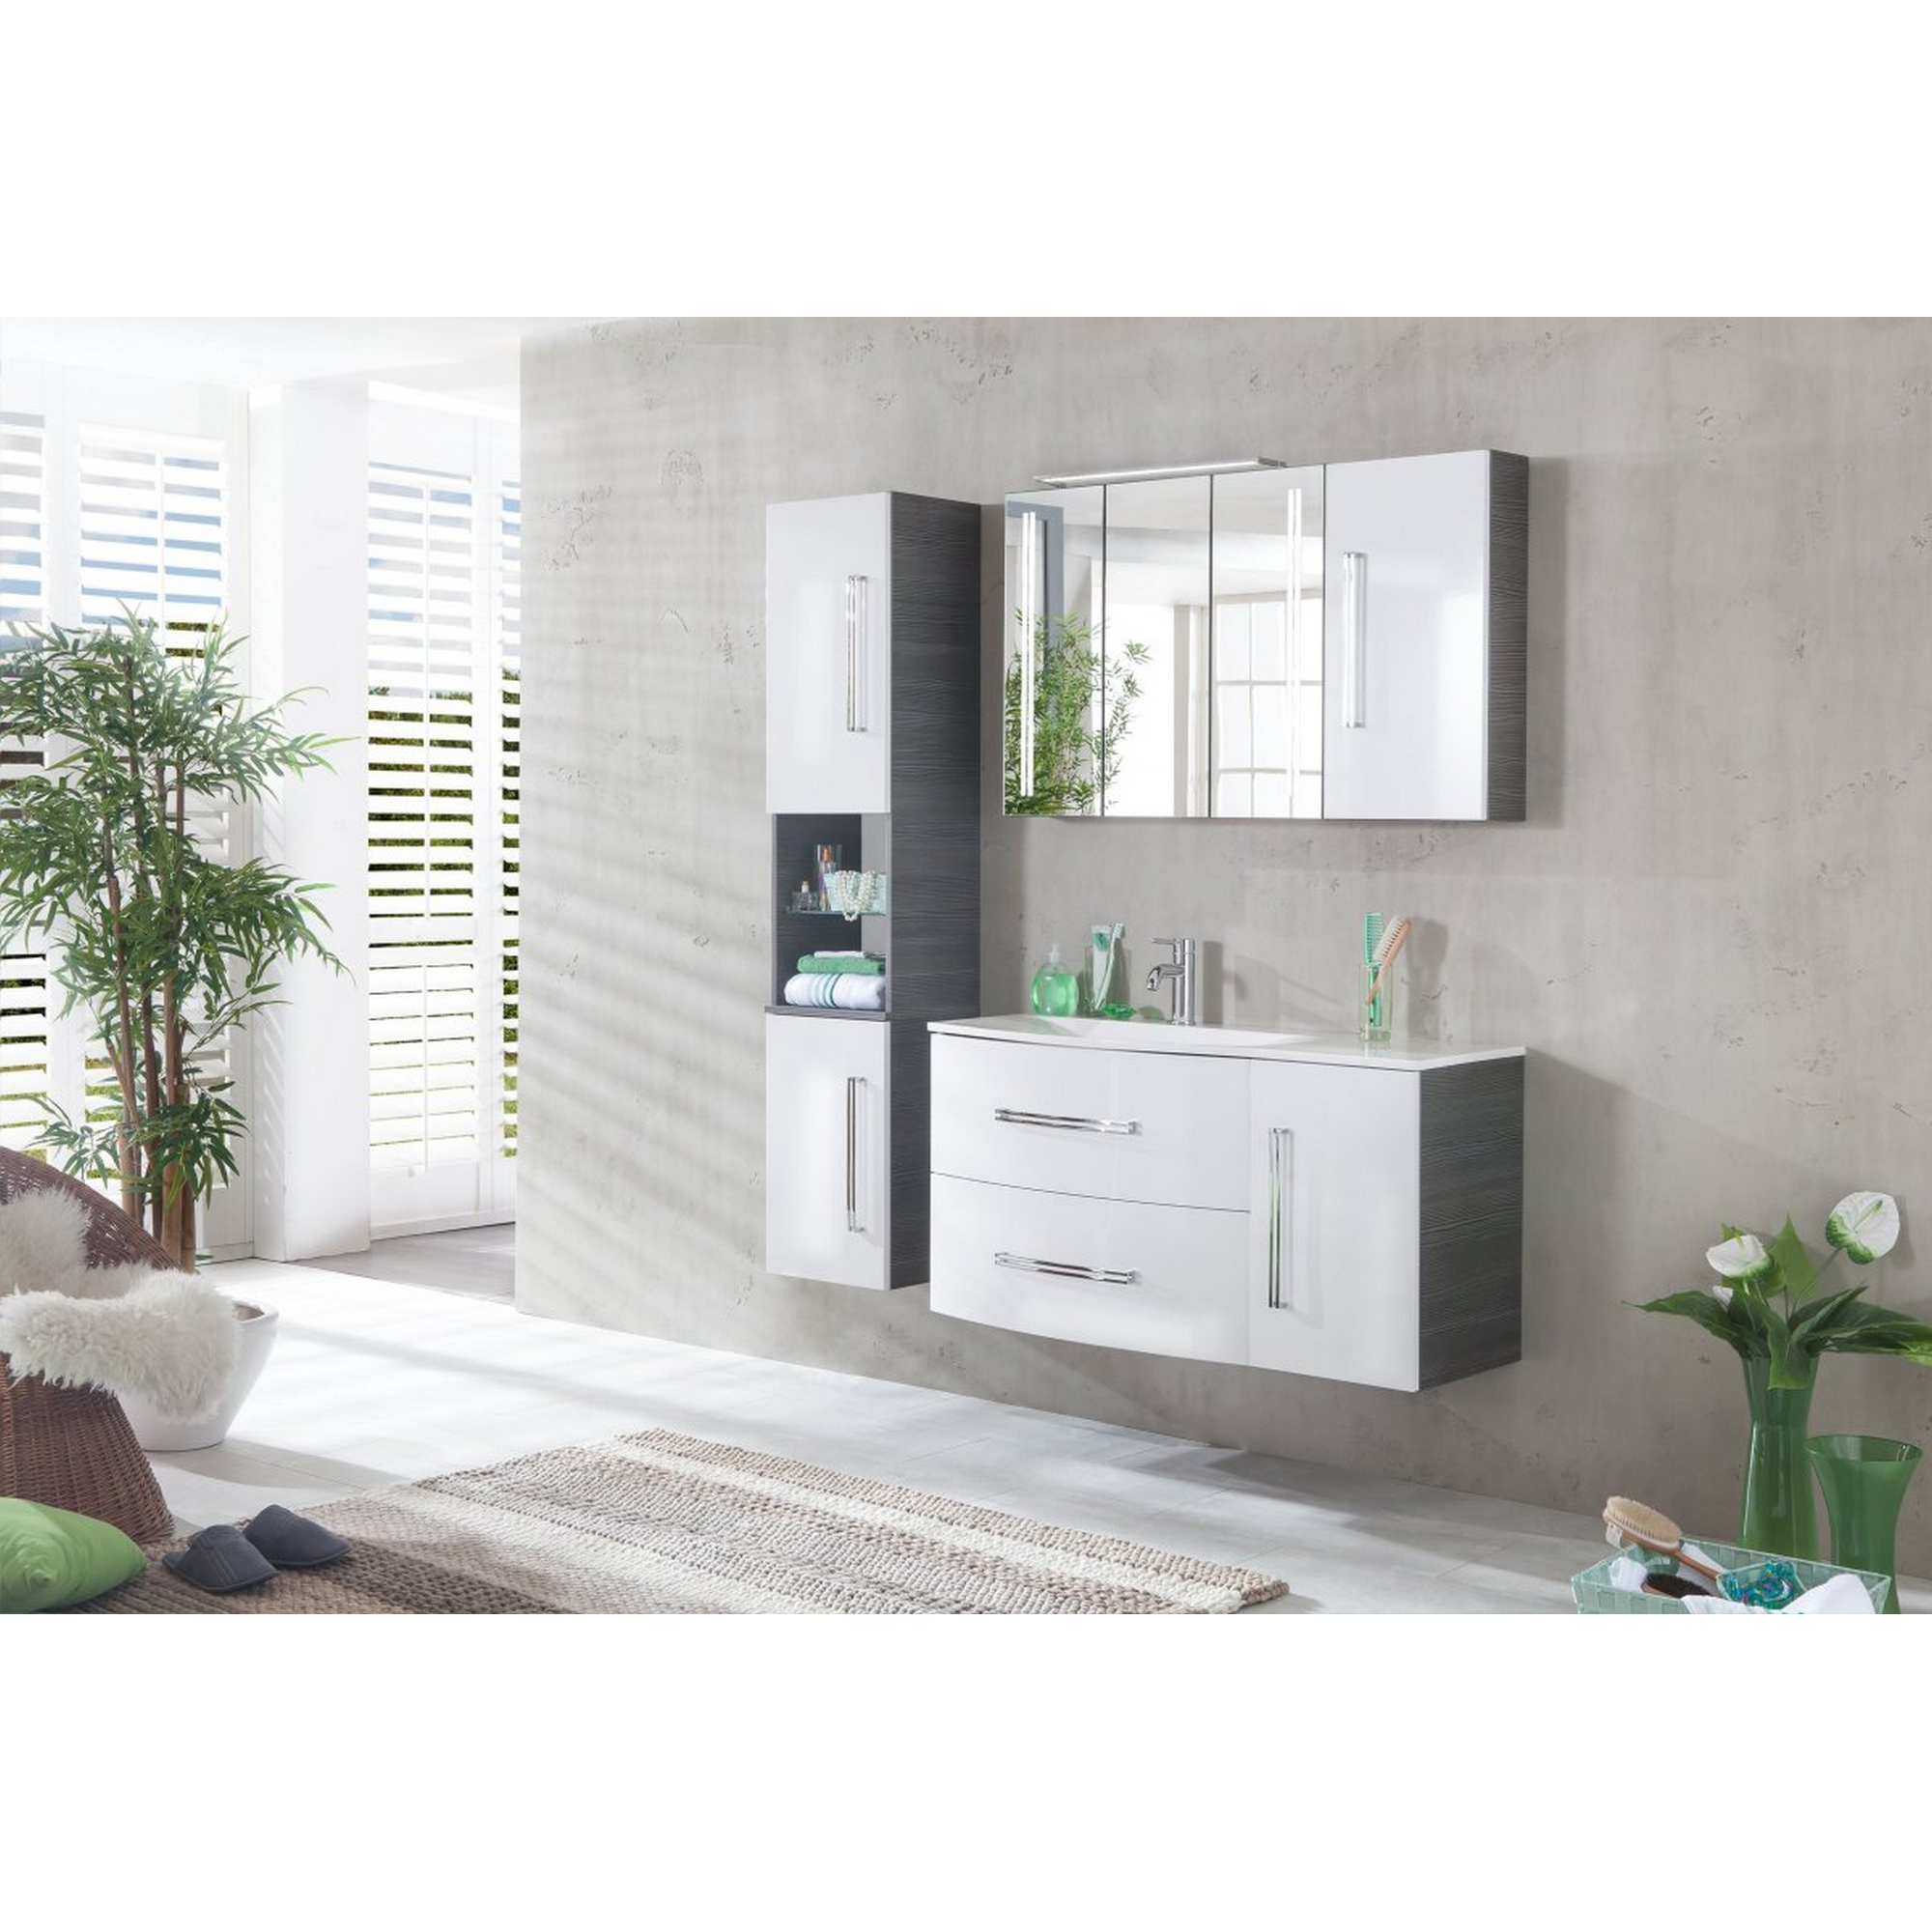 Waschtisch-Unterbau 'Lugano' Pinie anthrazitfarben/weiß 35 x 57,5 x 39,5 cm + product picture